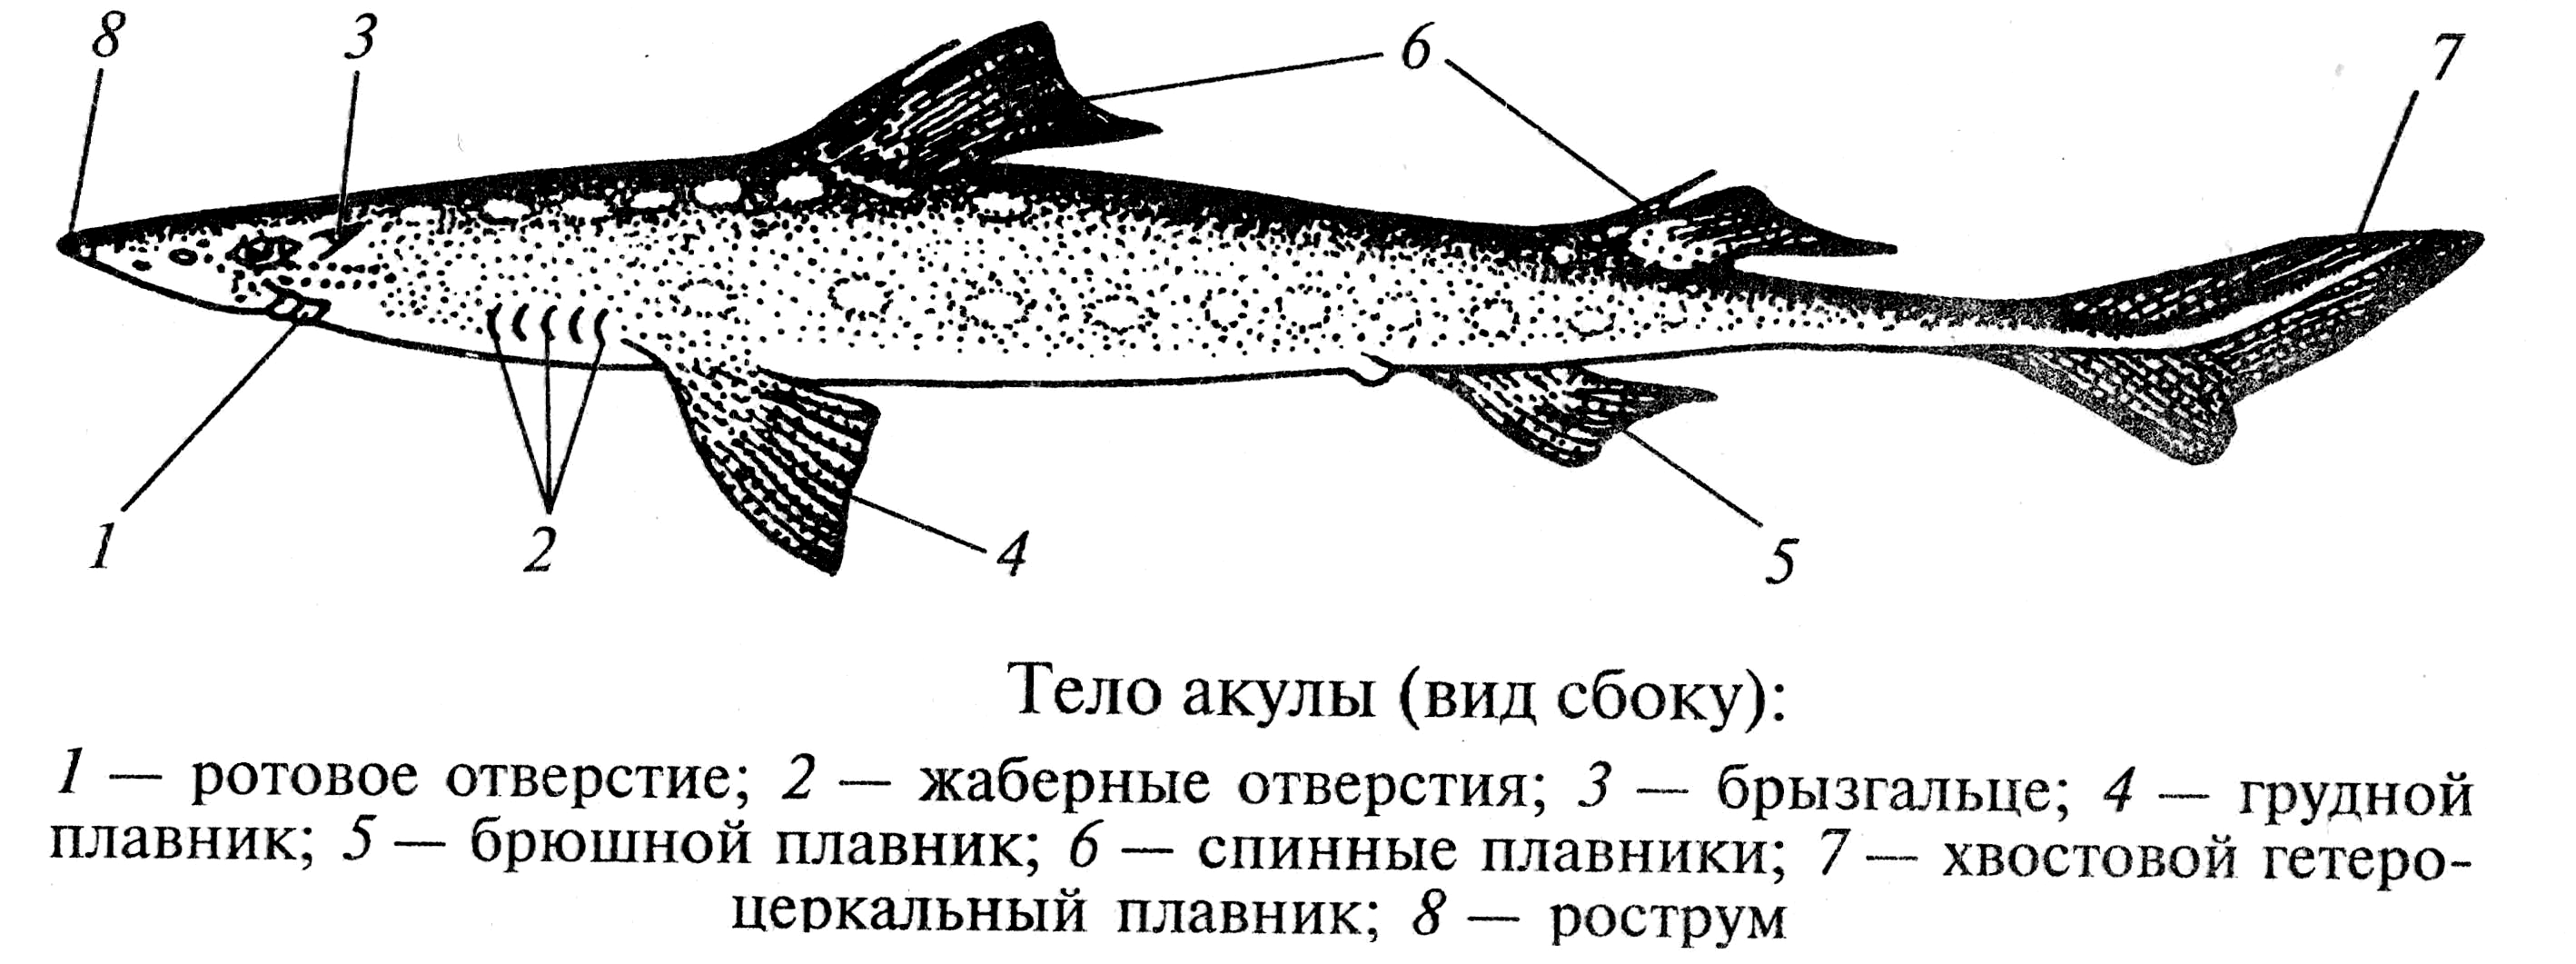 Рот хрящевые рыбы костные рыбы